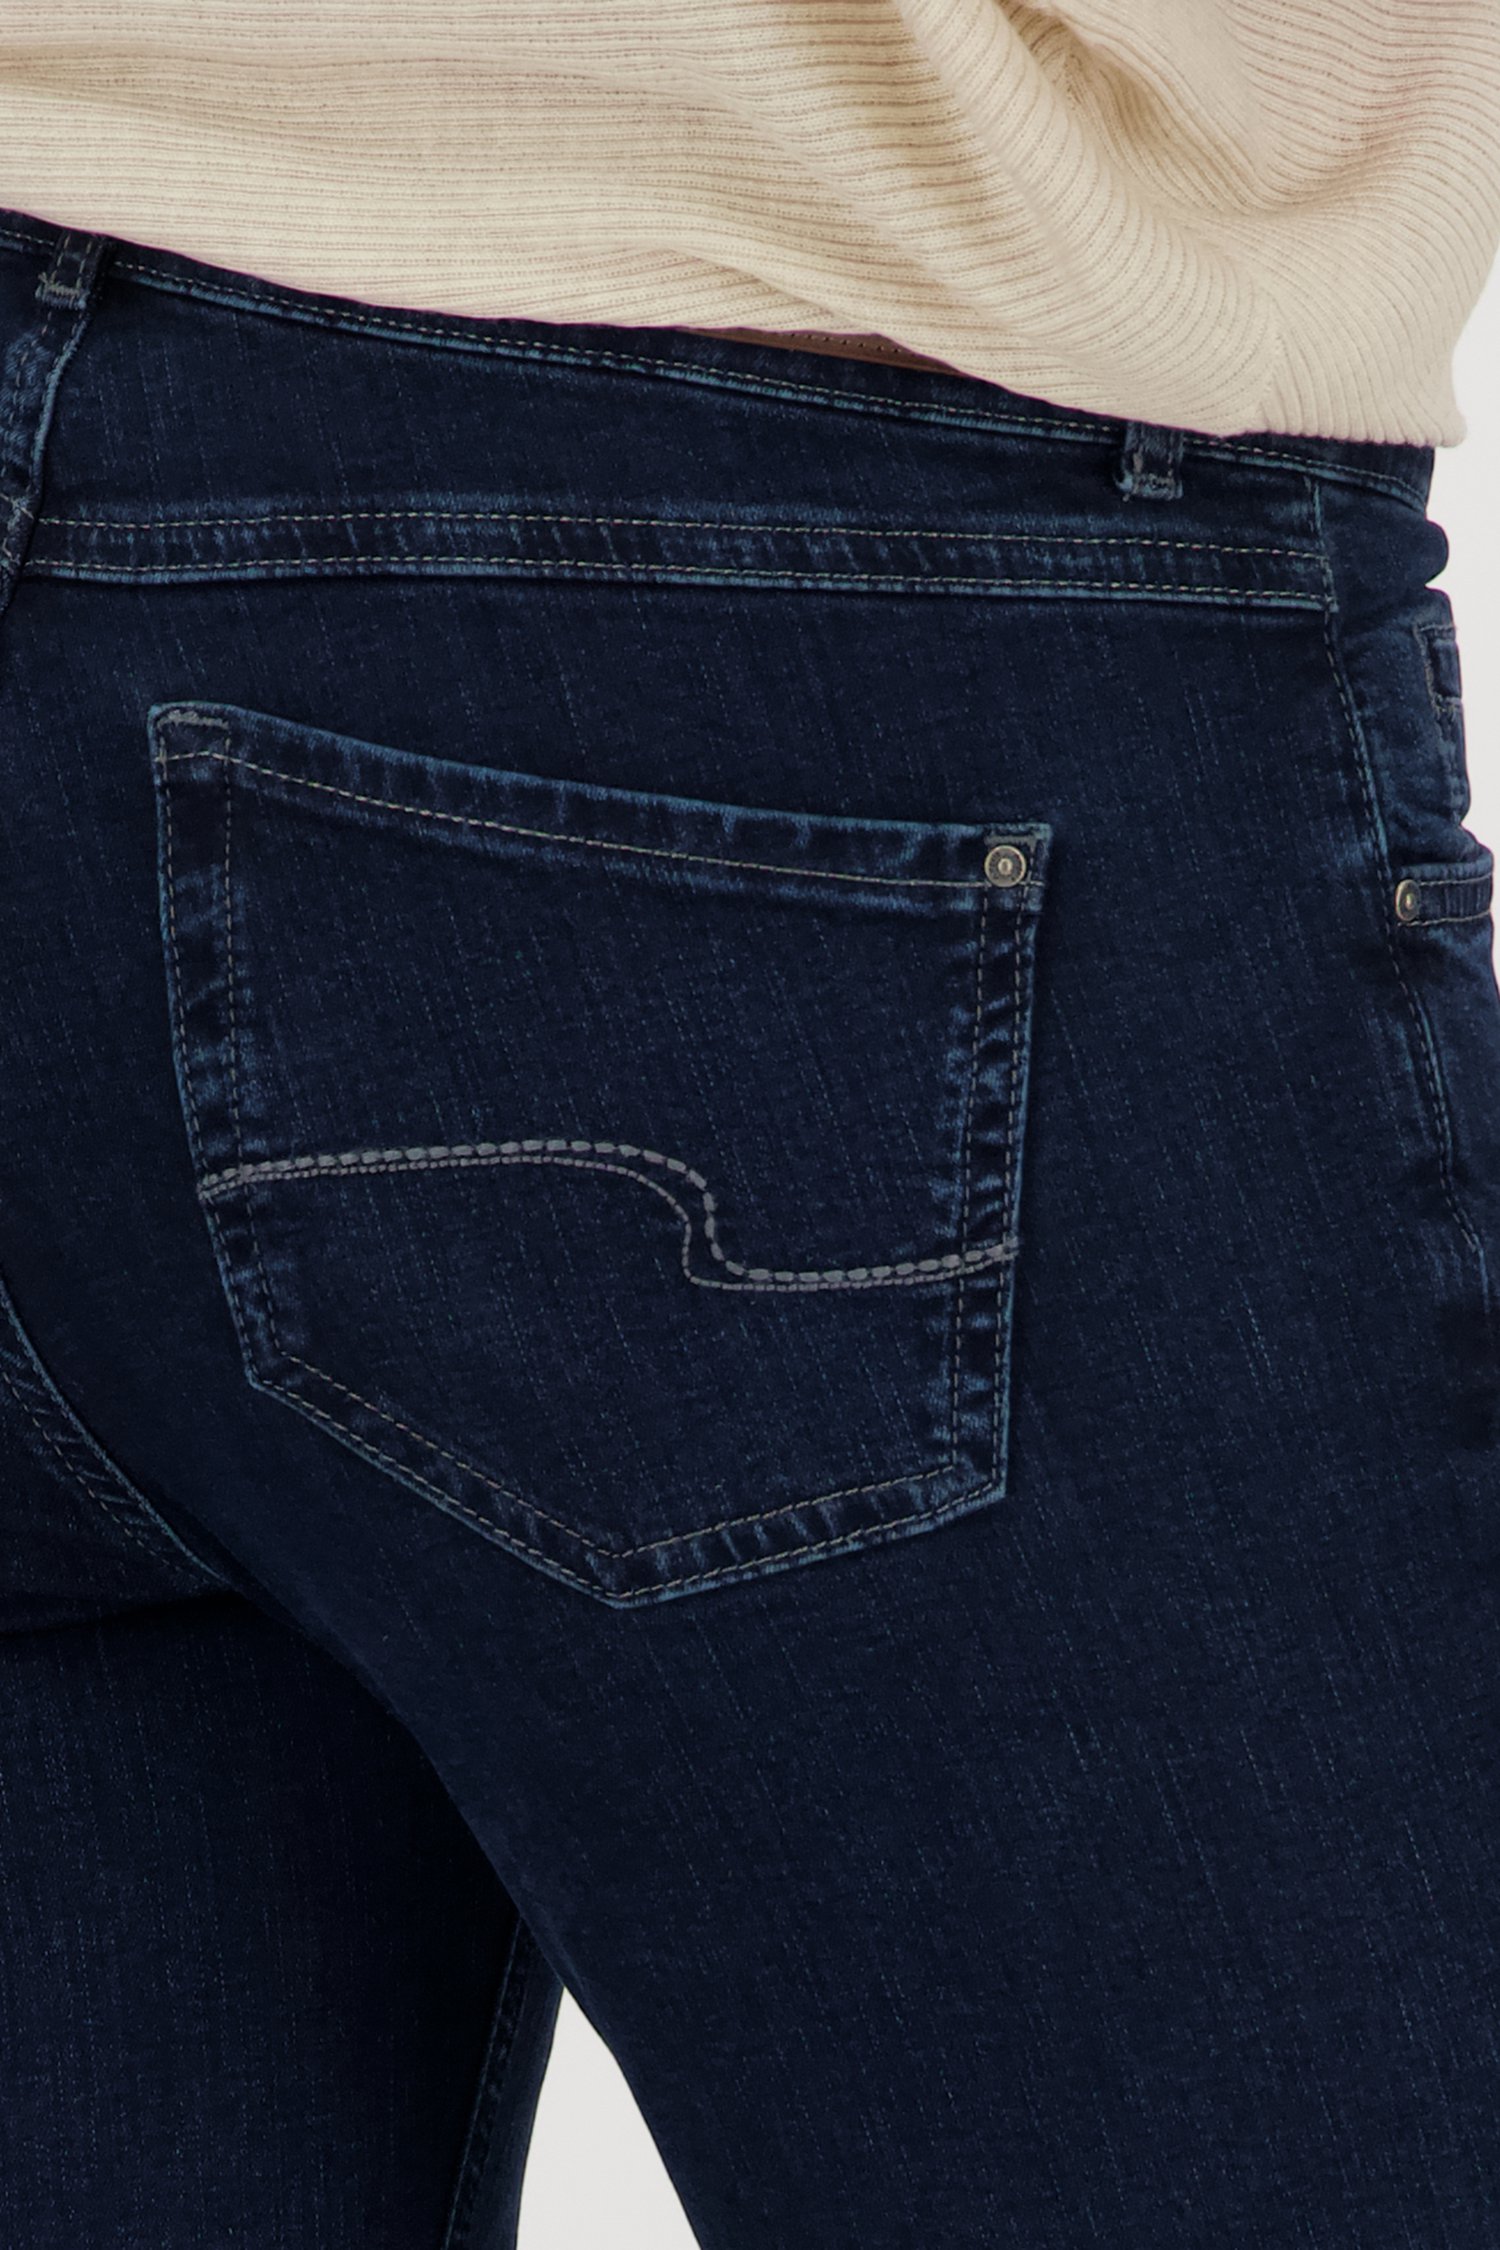 Donkerblauwe jeans - Slim fit - L30 van Angels voor Dames